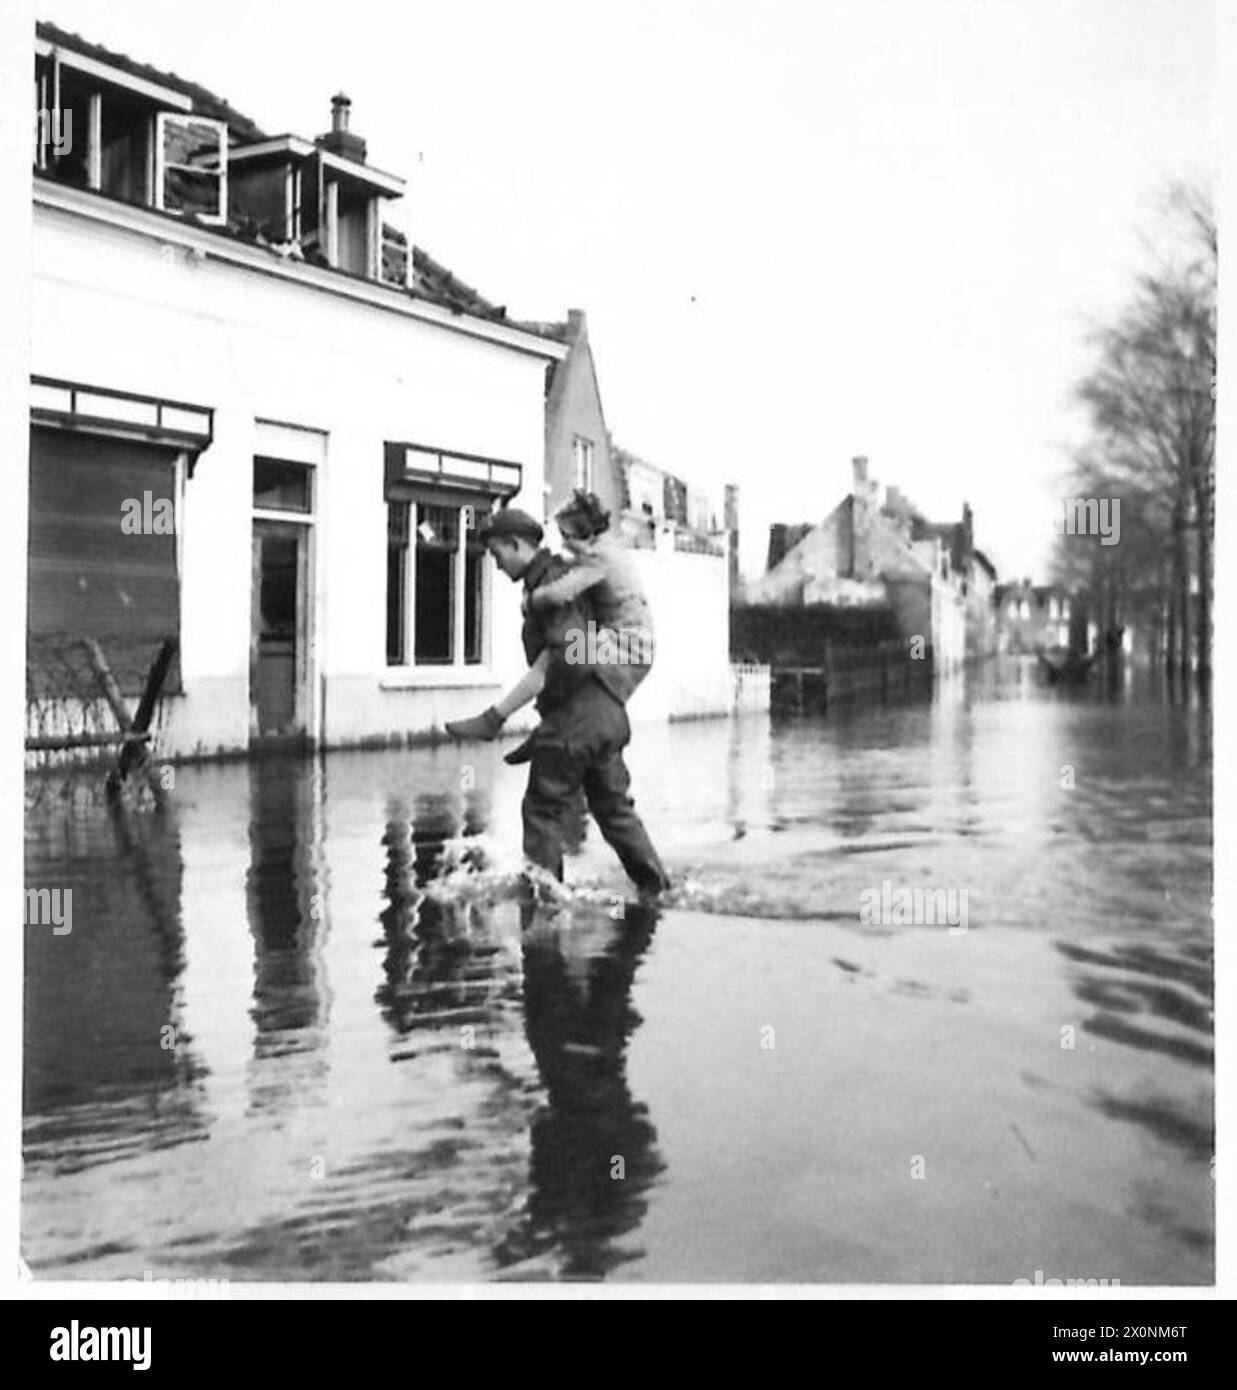 L'ÎLE INONDÉE DE WALCHEREN - Un soldat, chanceux d'être bien vêtu de cuissards, transporte une petite fille à travers les inondations. Négatif photographique, Armée britannique, 21e groupe d'armées Banque D'Images